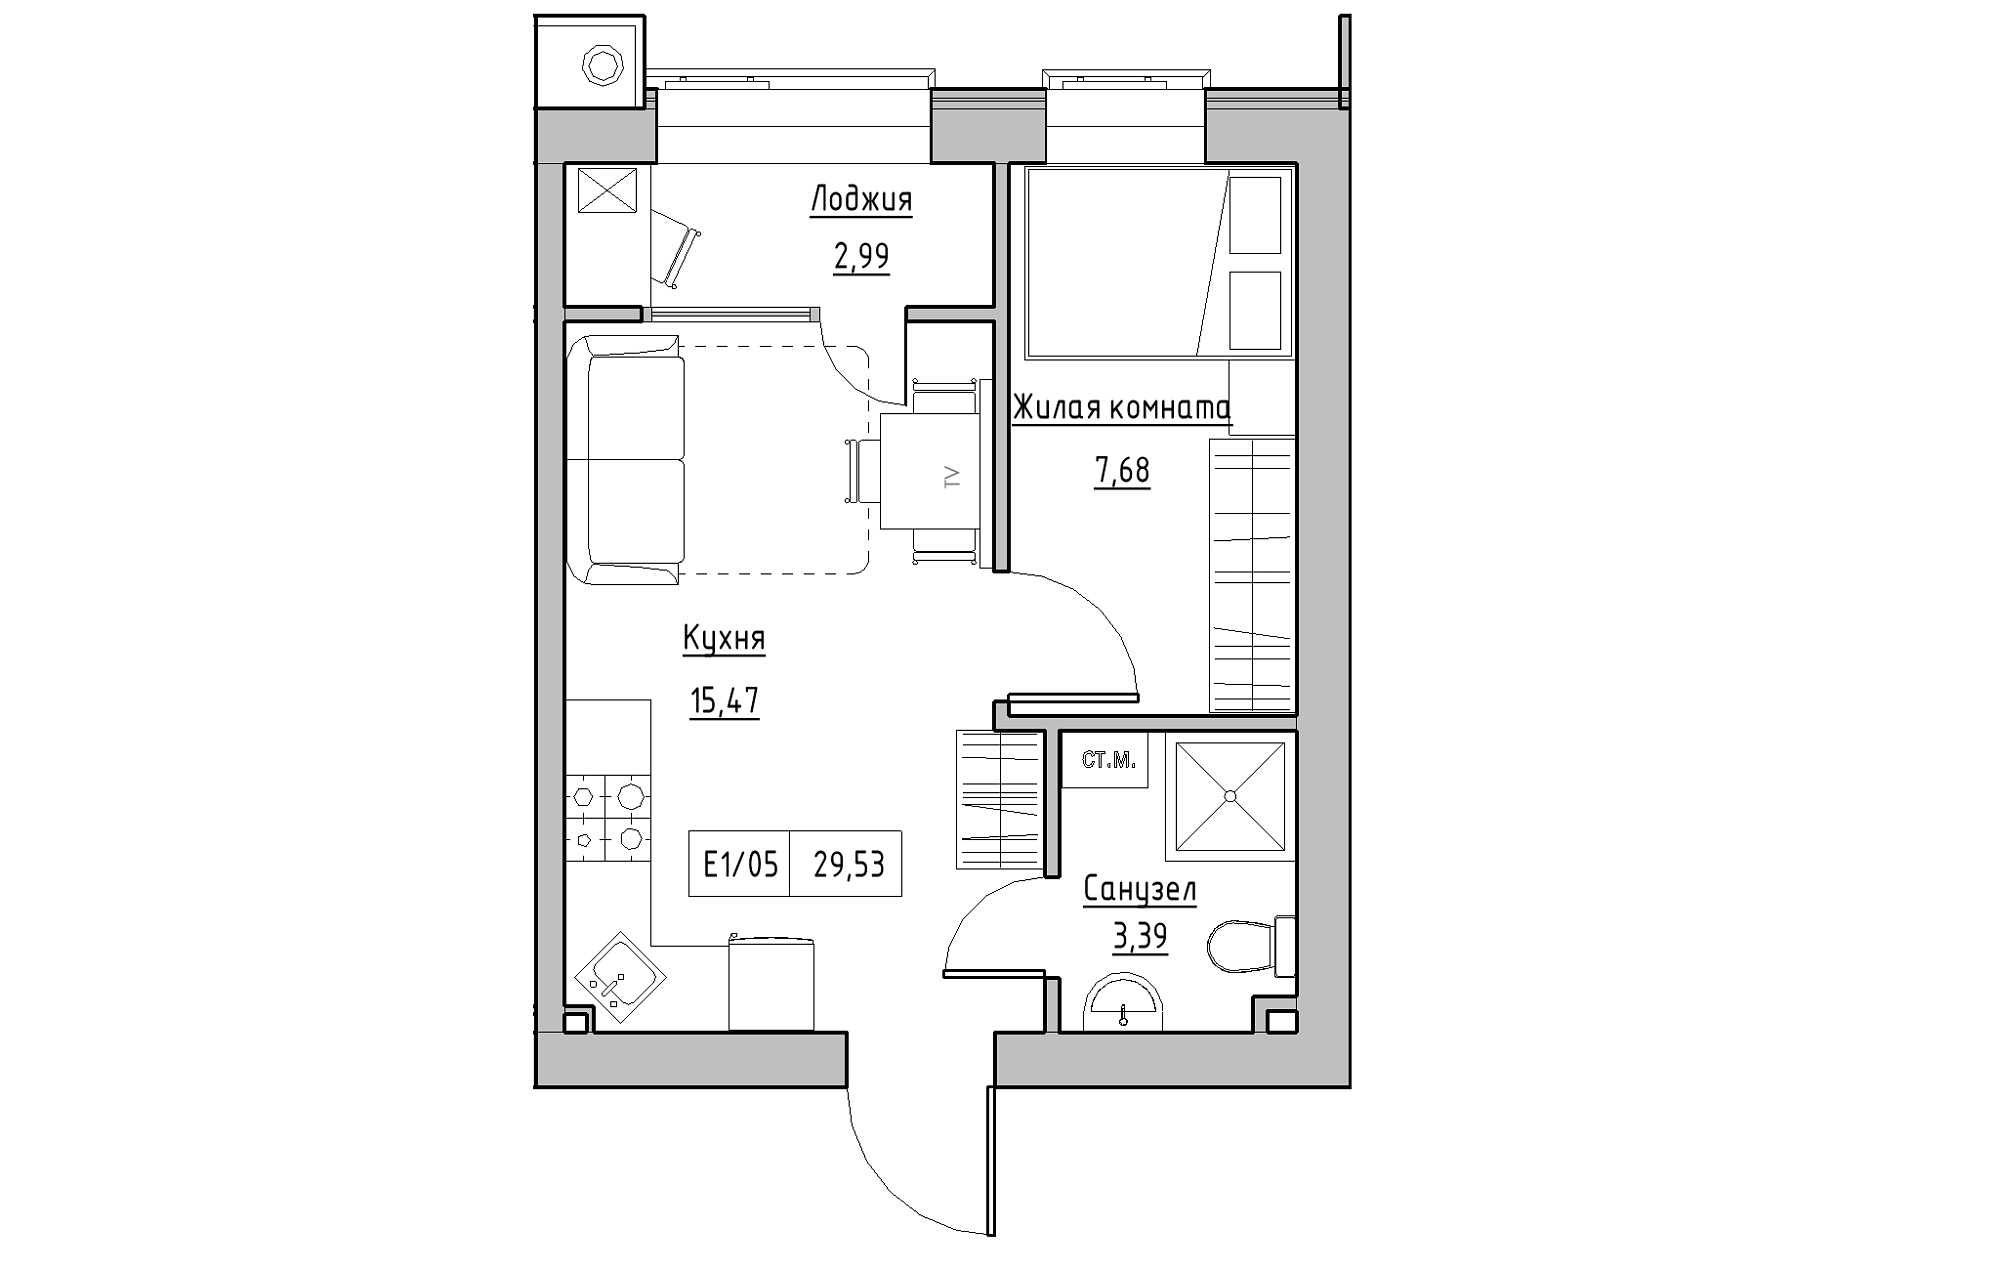 Планування 1-к квартира площею 29.53м2, KS-013-03/0008.